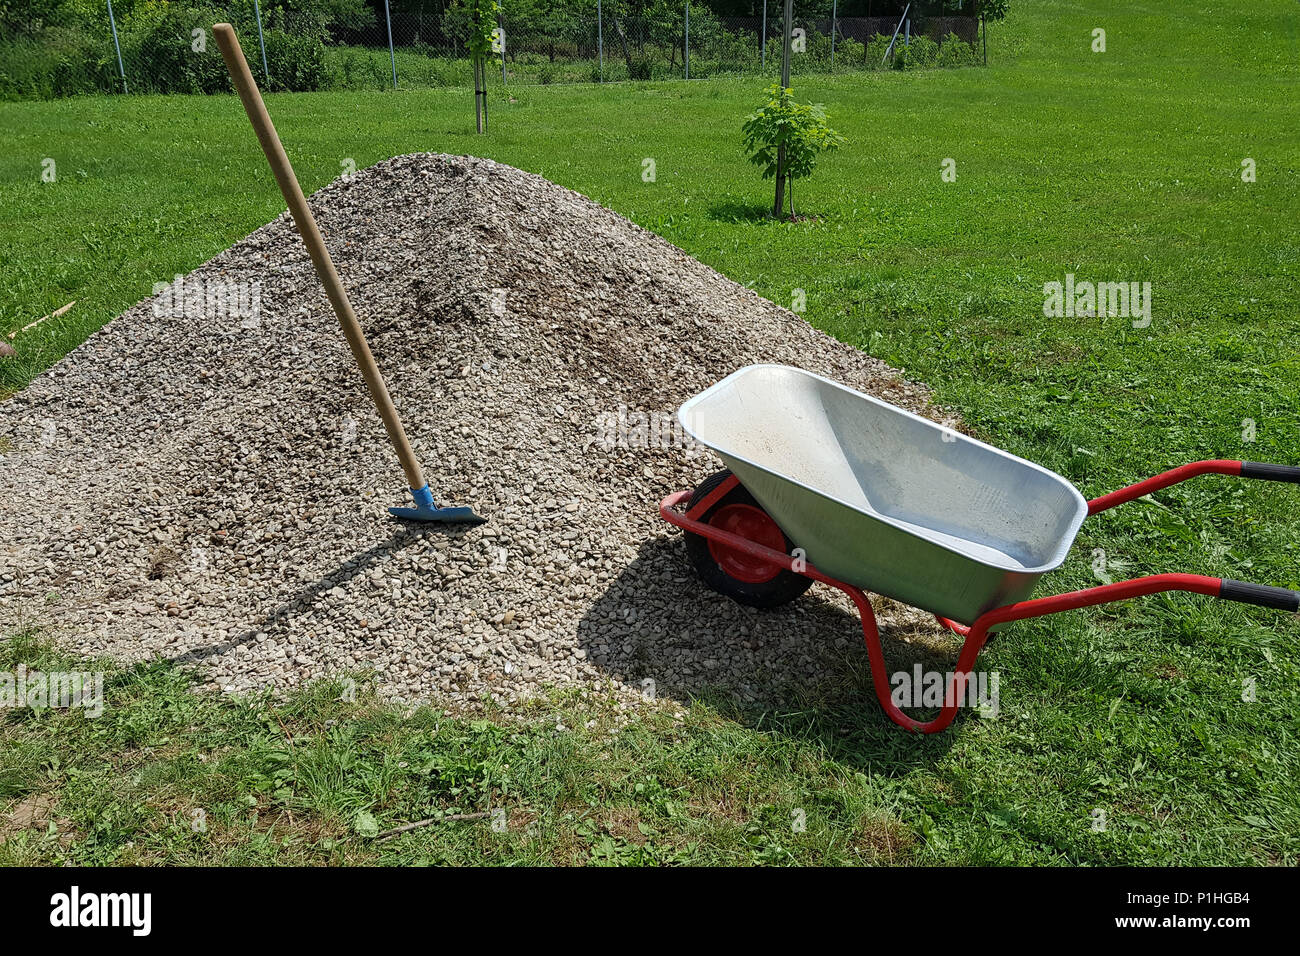 Construction wheelbarrow shovel on a pile of a rock gravel in a garden. Stock Photo